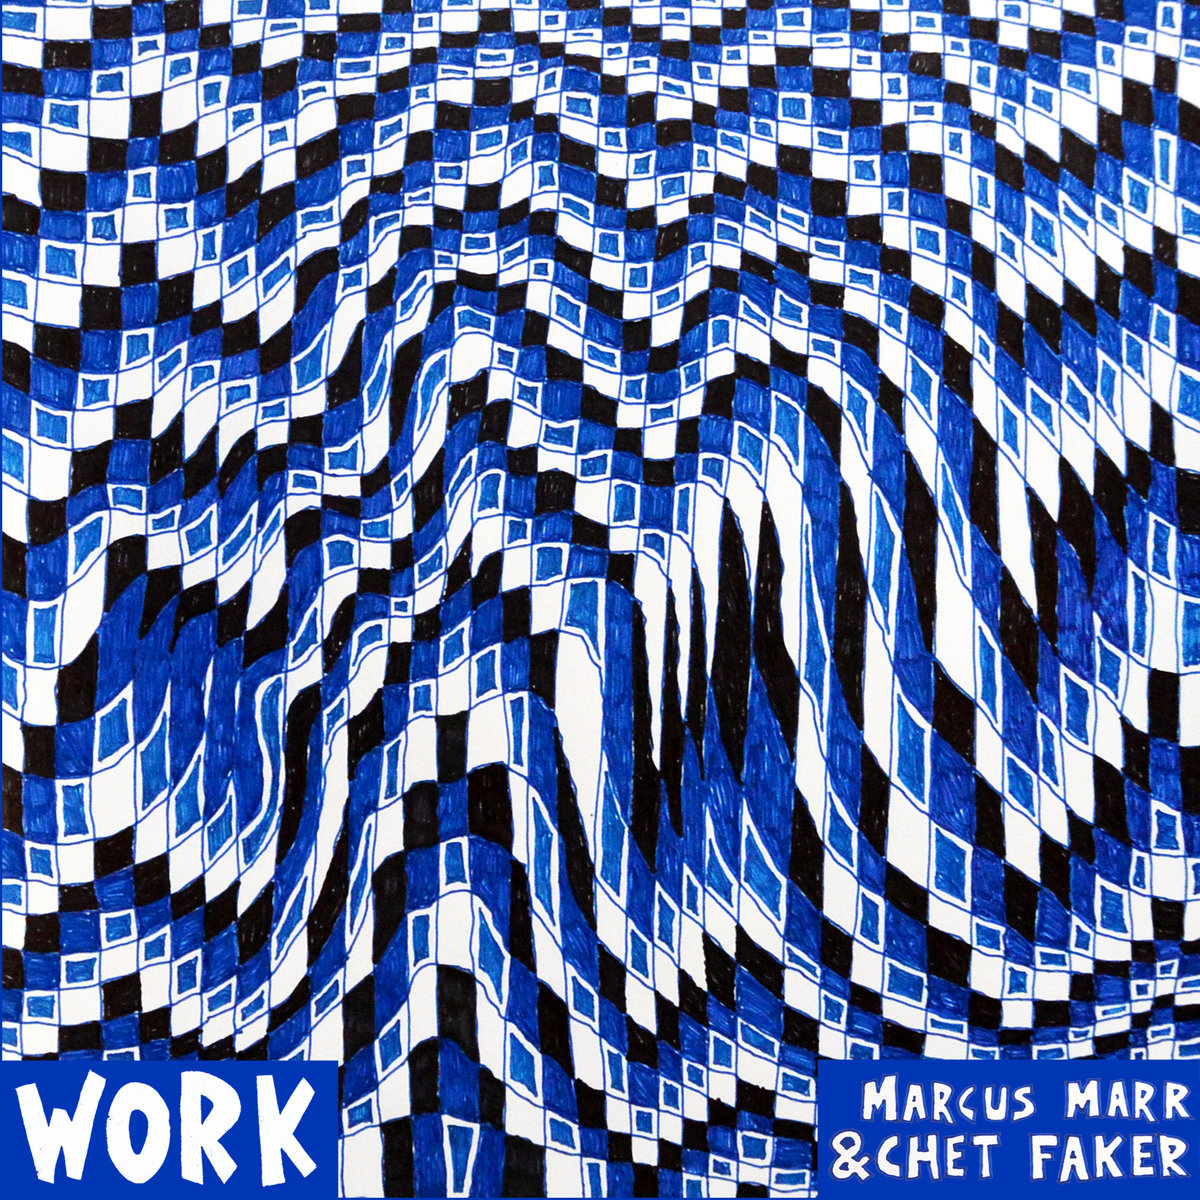 Chet Faker & Marcus Marr – Work